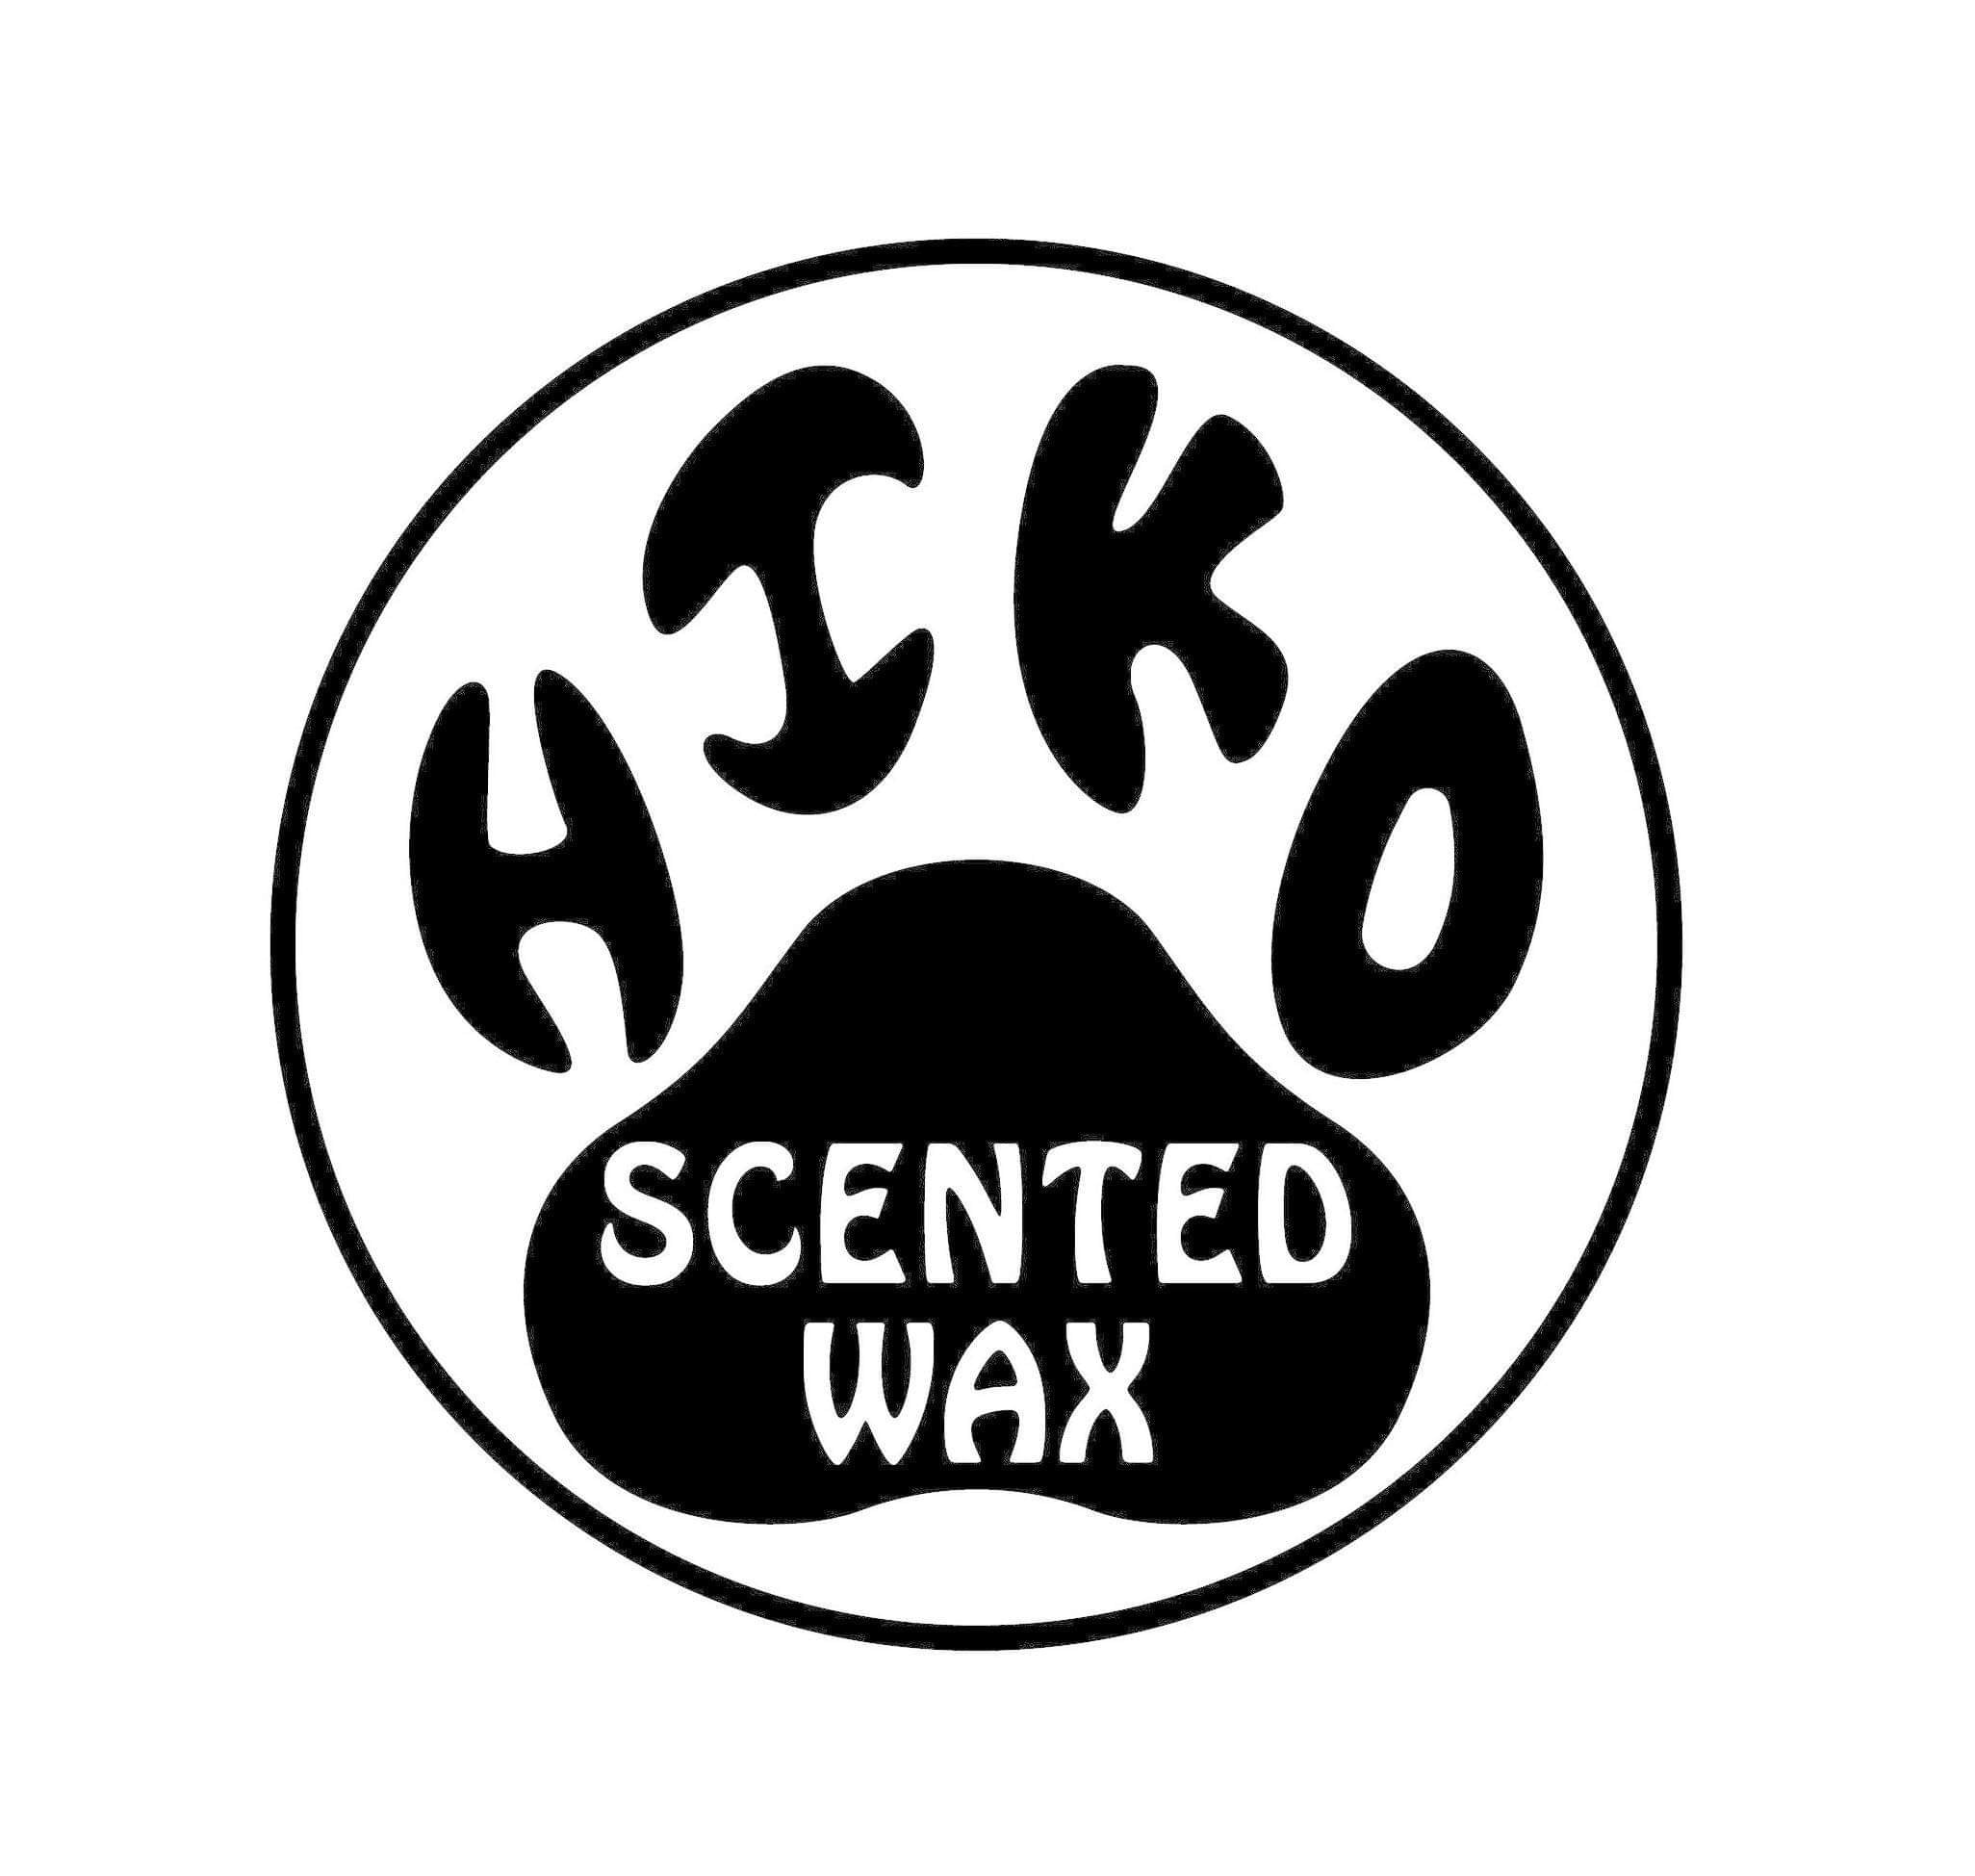 HiKo Scented Wax Ltd